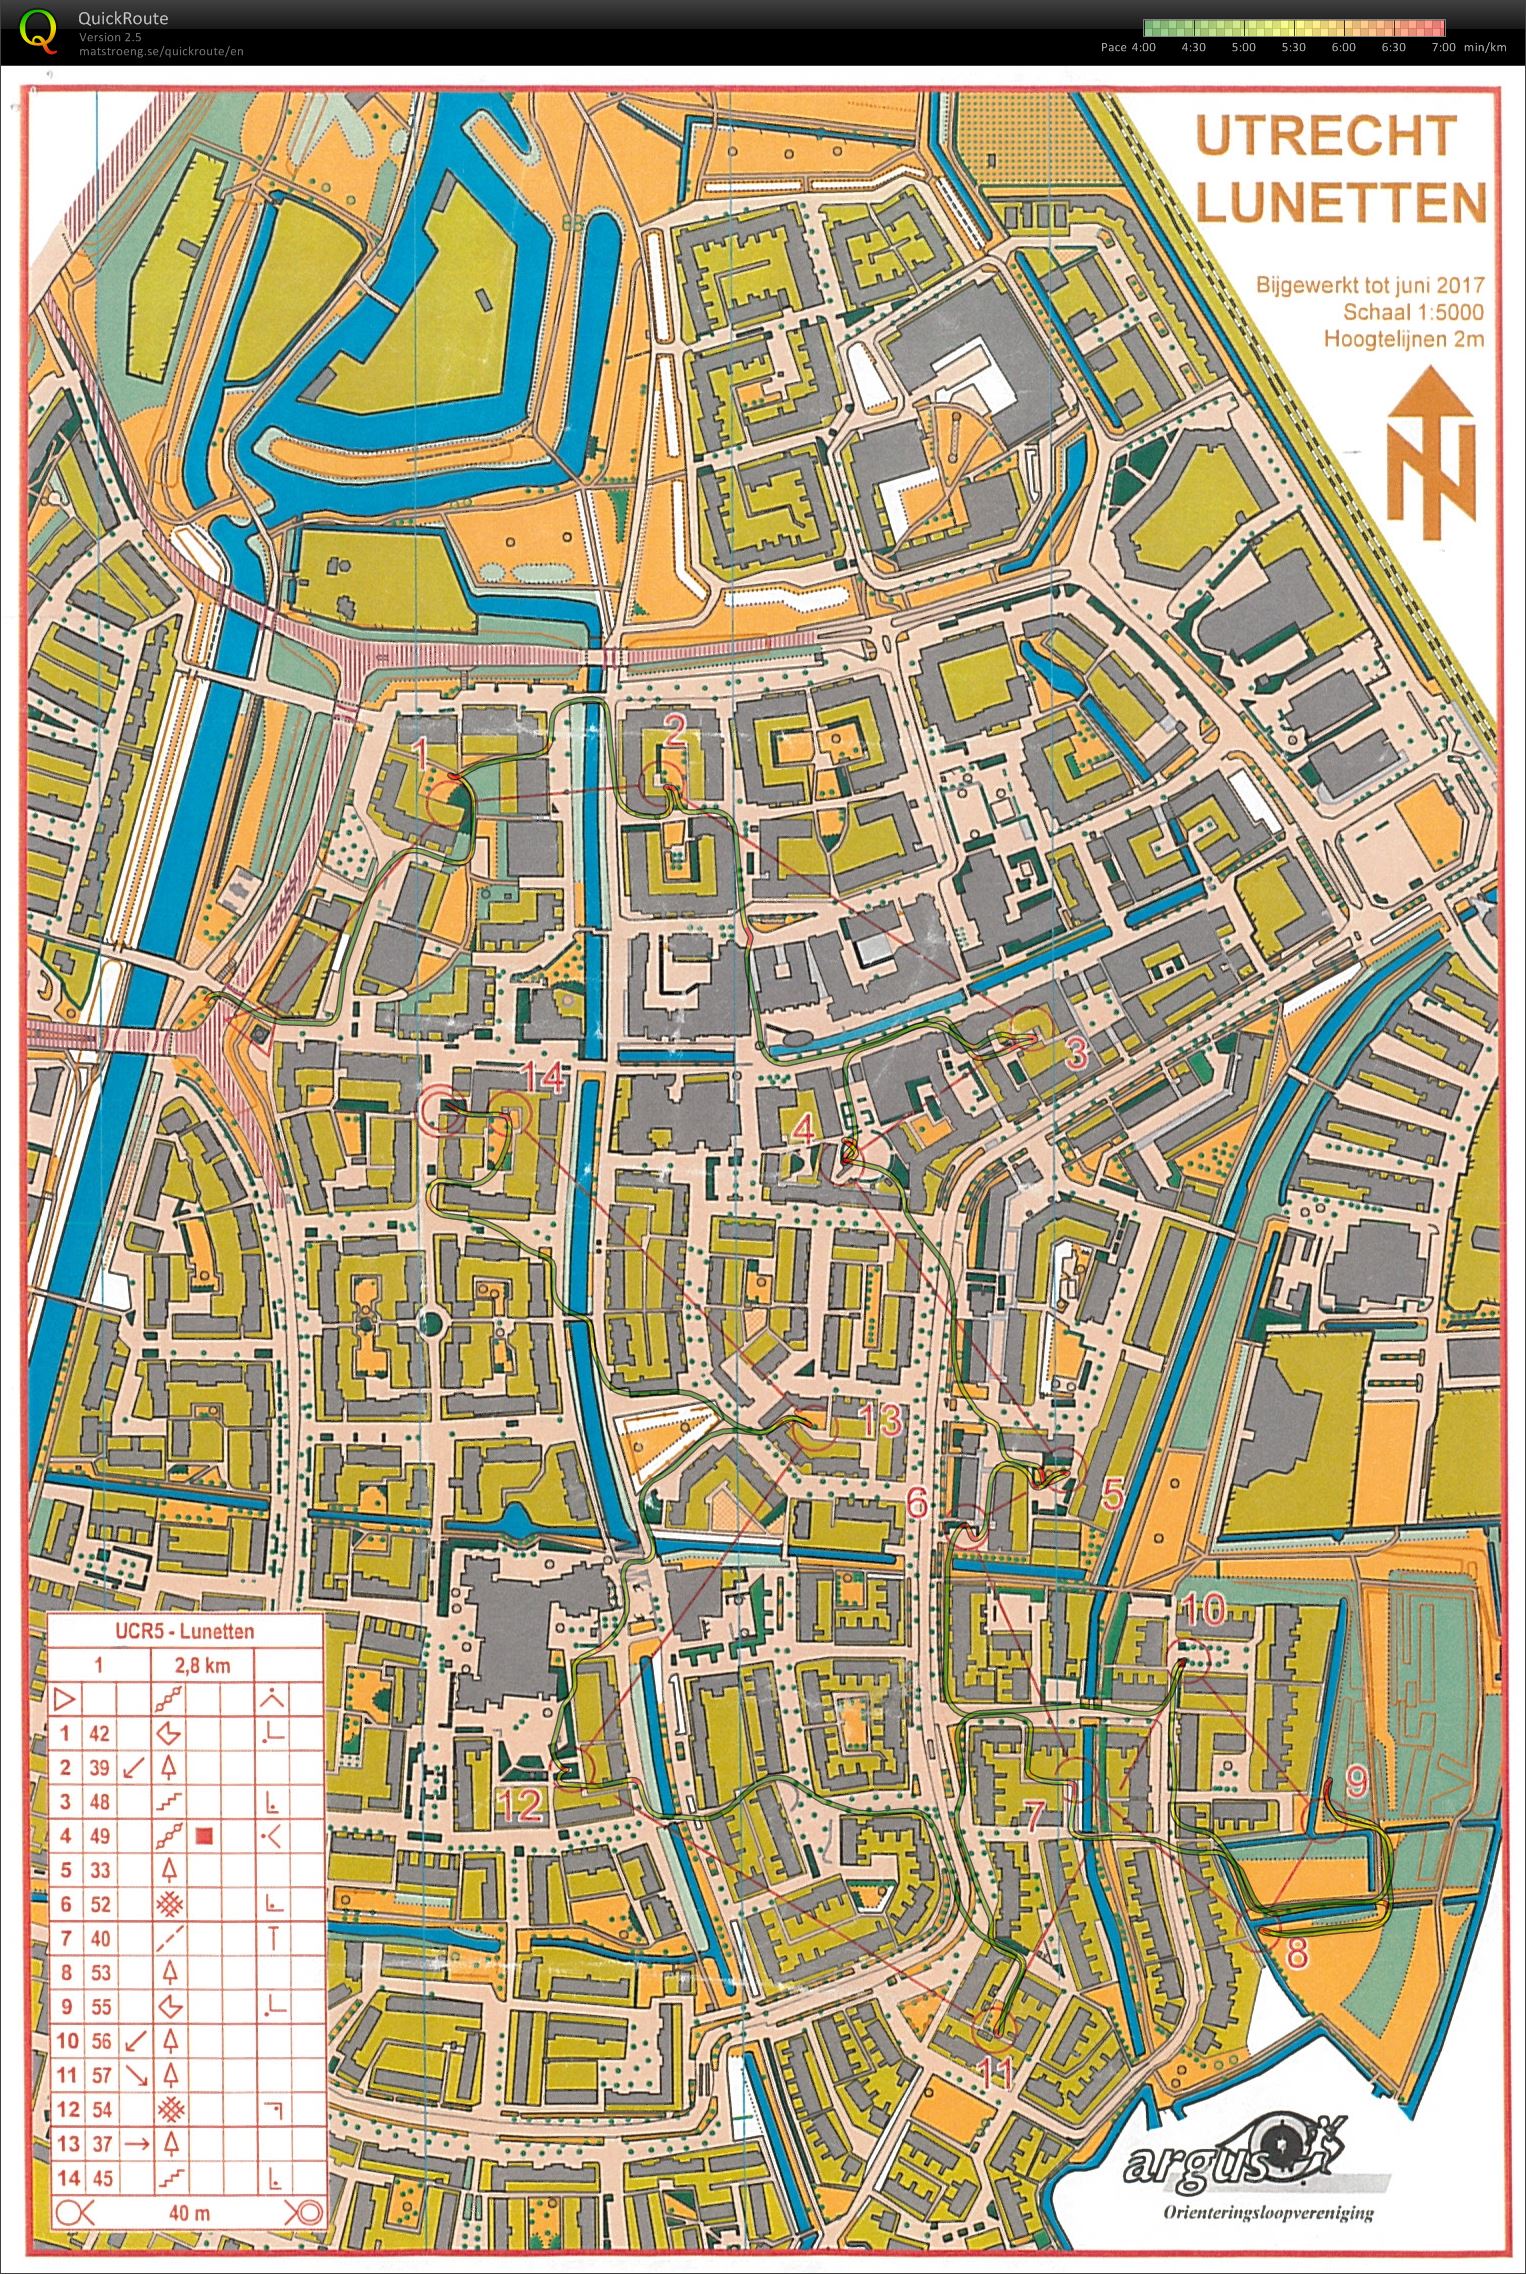 Utrecht City Race #5, route 1 (2017-07-02)